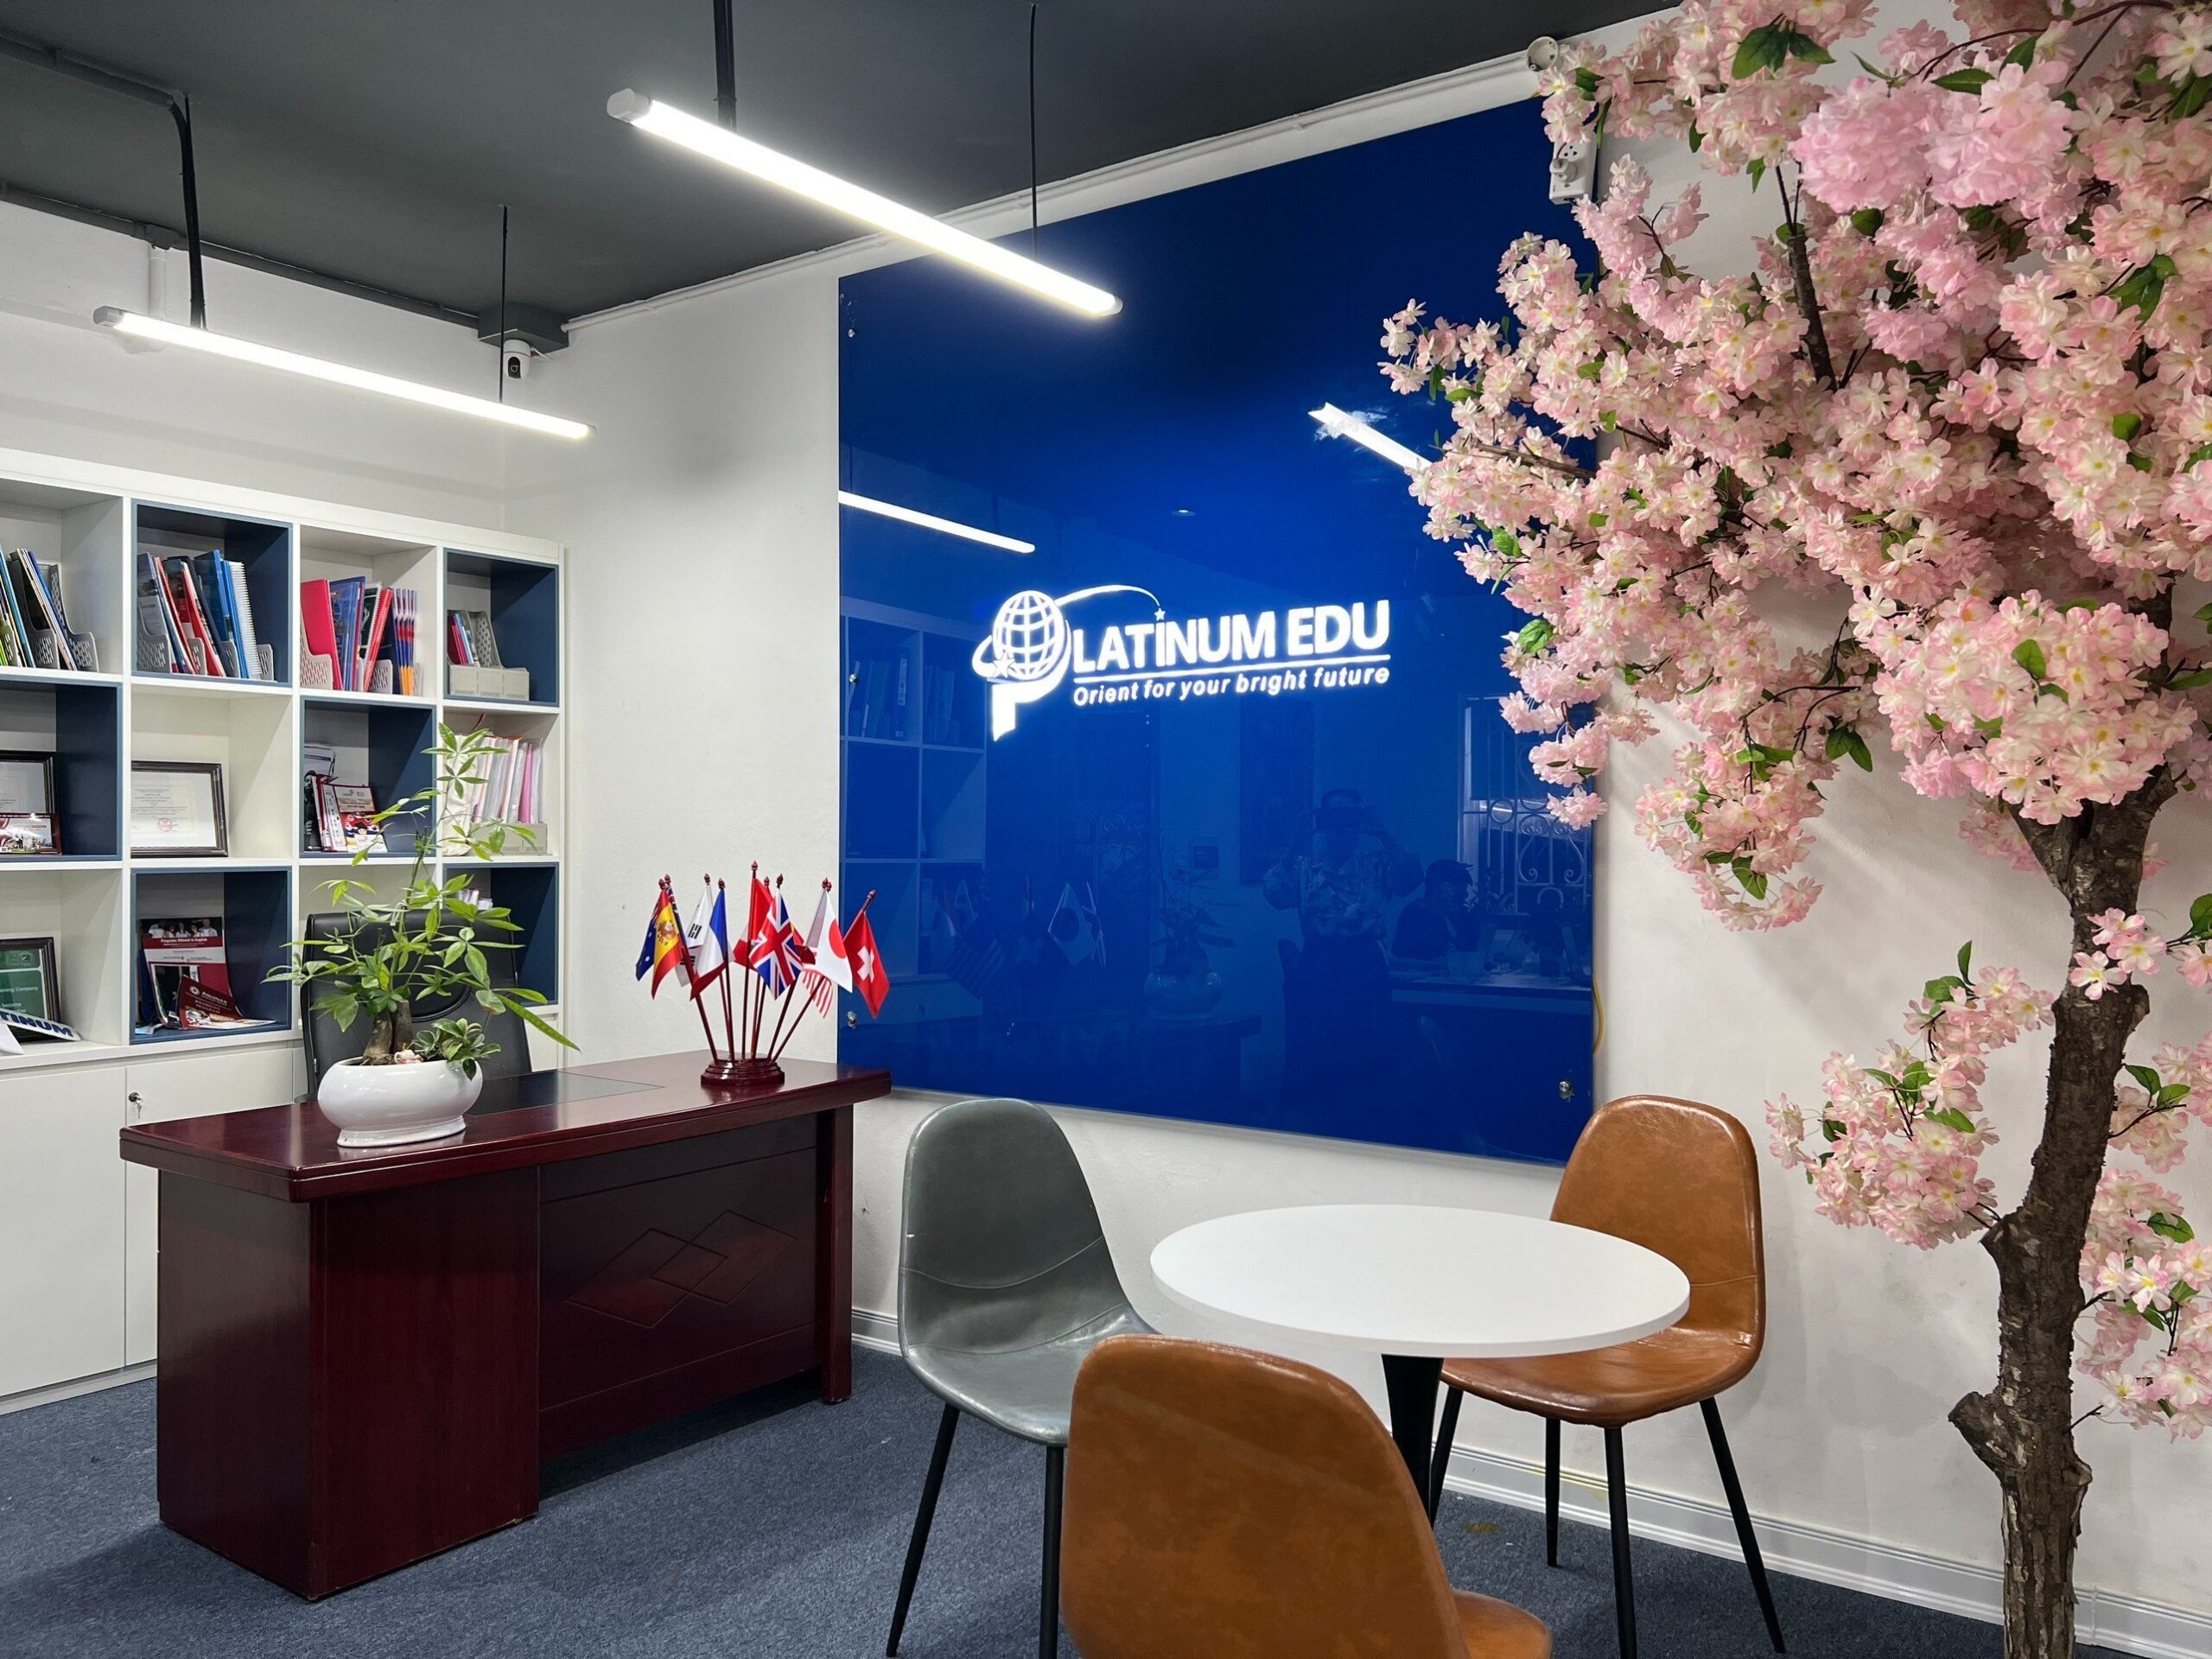 Văn phòng Platinum Edu - Đơn vị xử lý hồ sơ Visa Úc uy tín 